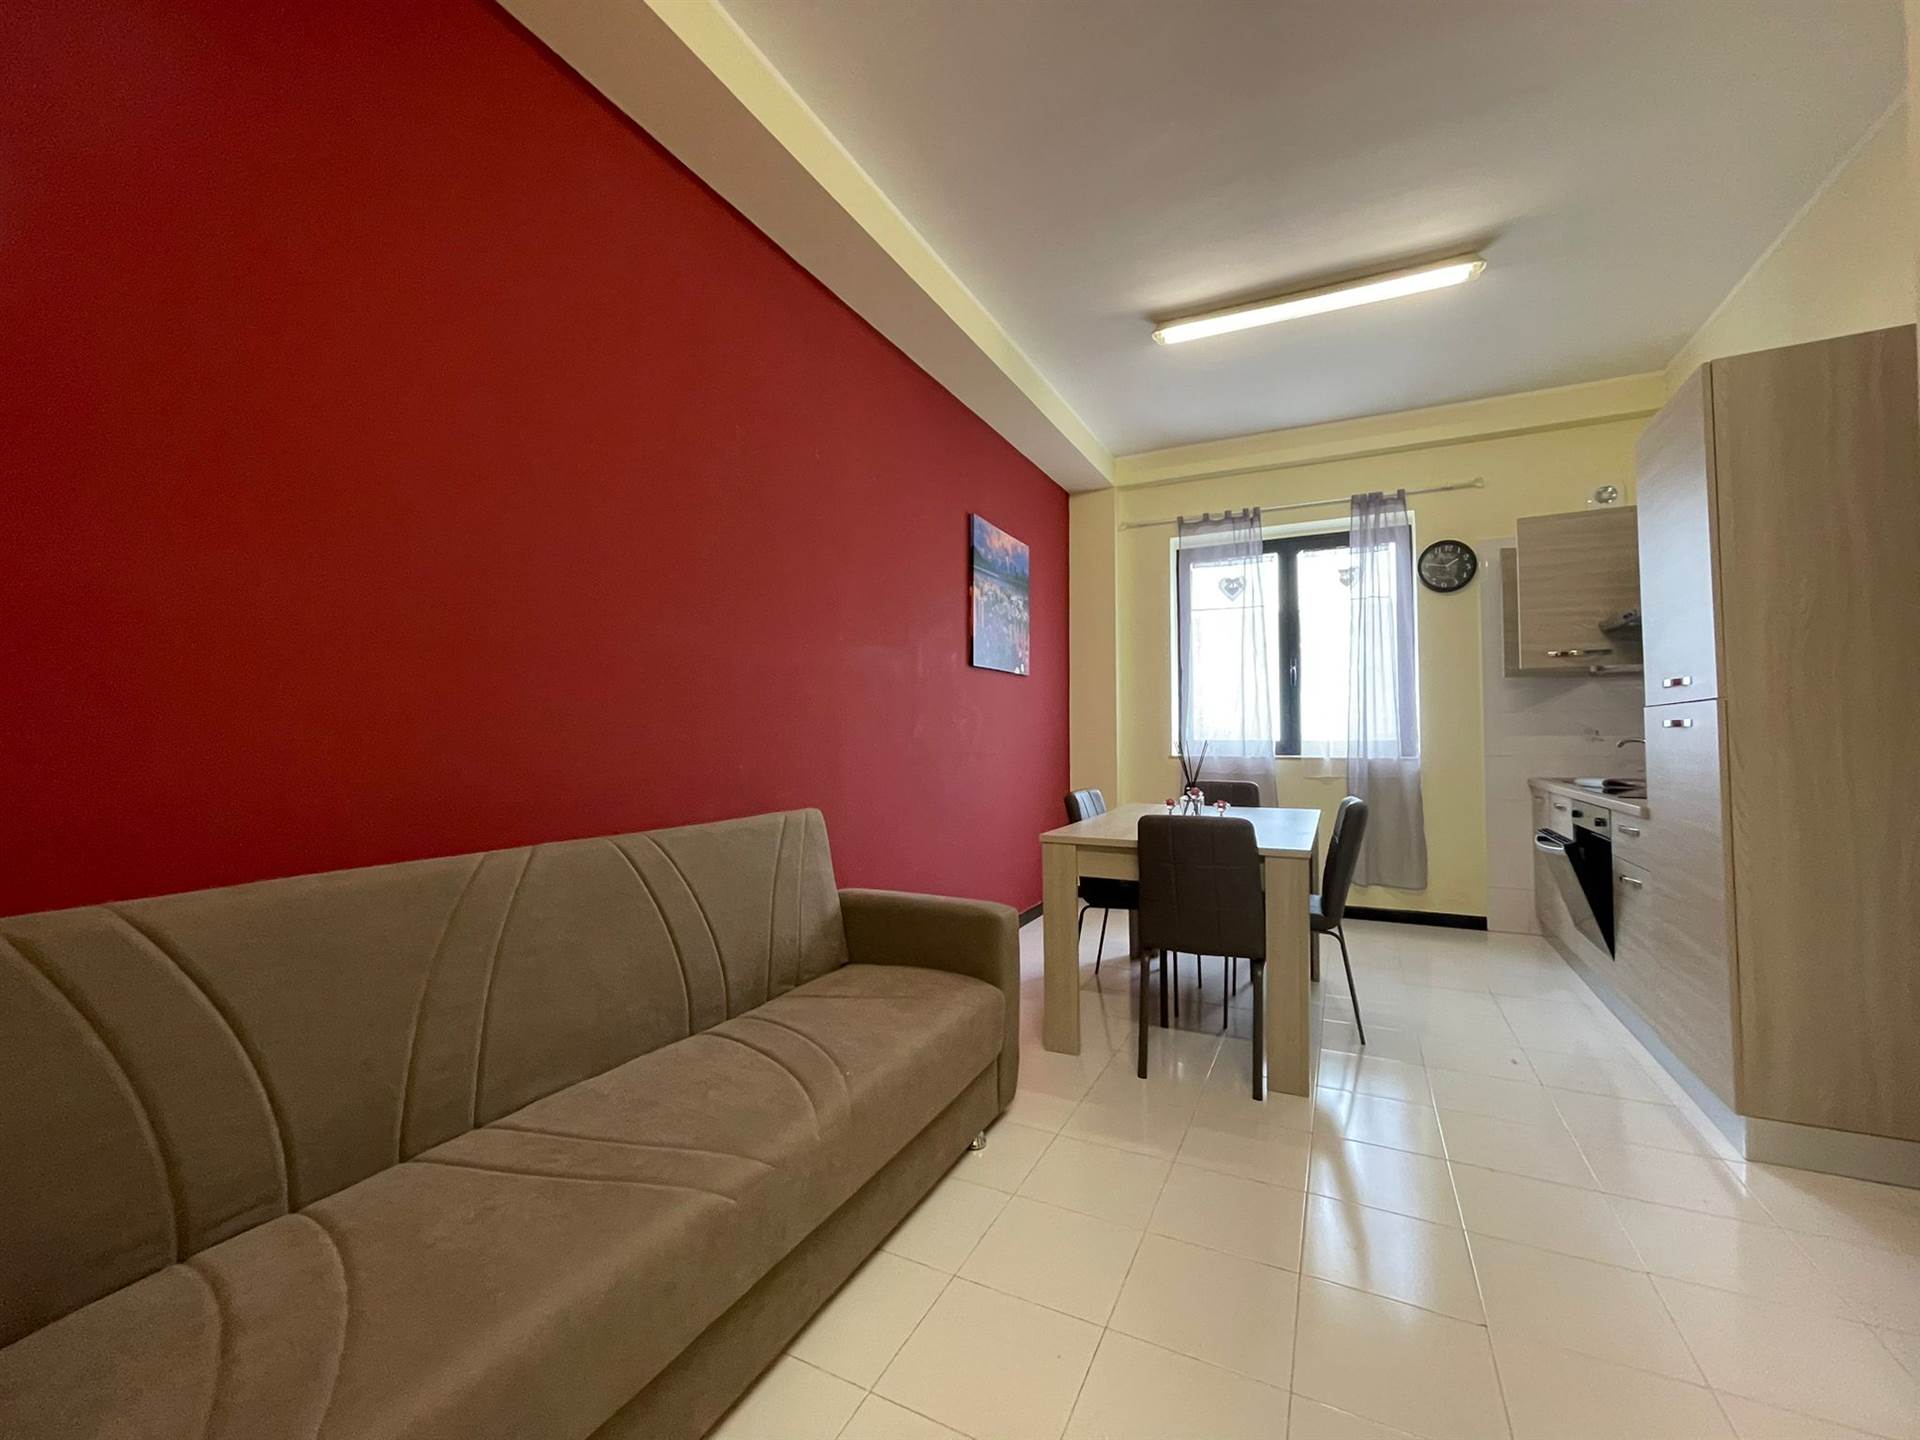 Appartamento in affitto a Salerno, 2 locali, zona Località: INDUSTRIALE, prezzo € 800 | PortaleAgenzieImmobiliari.it